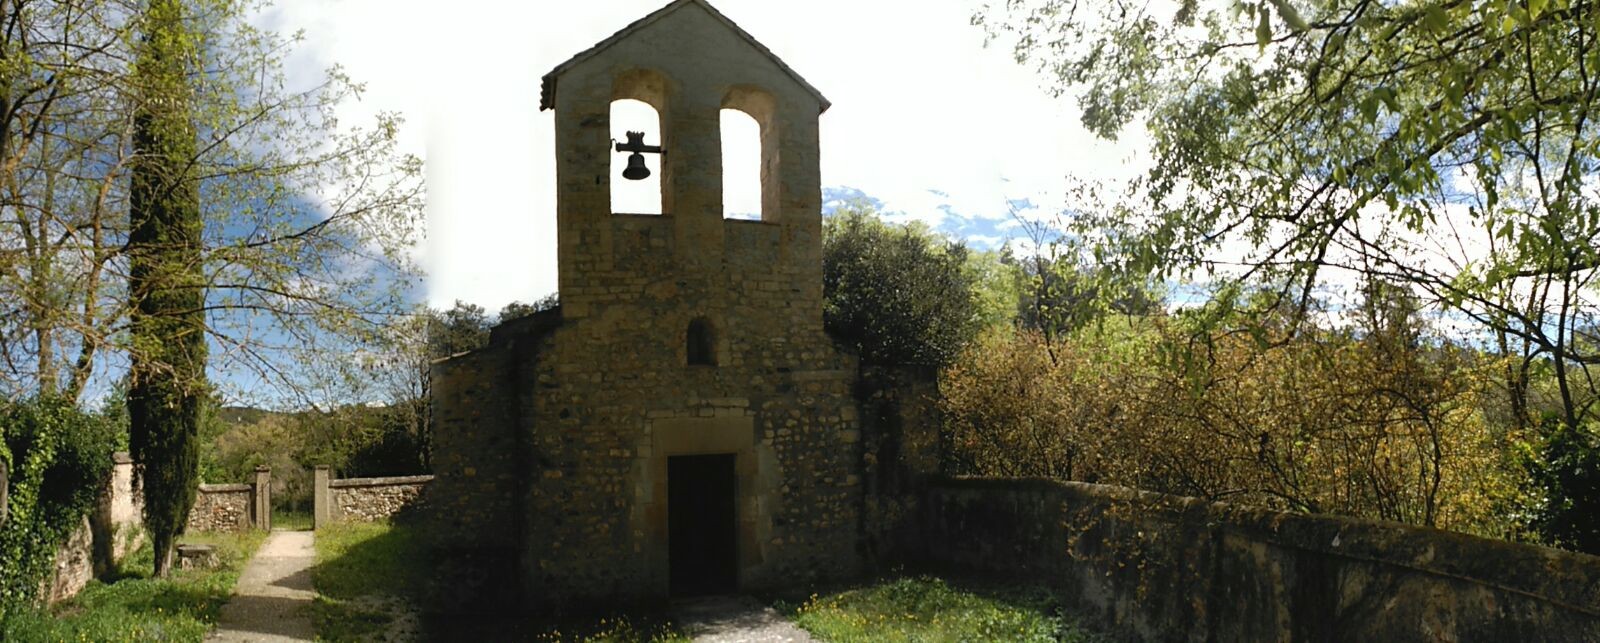 Fotografia de l'església de sant Iscle